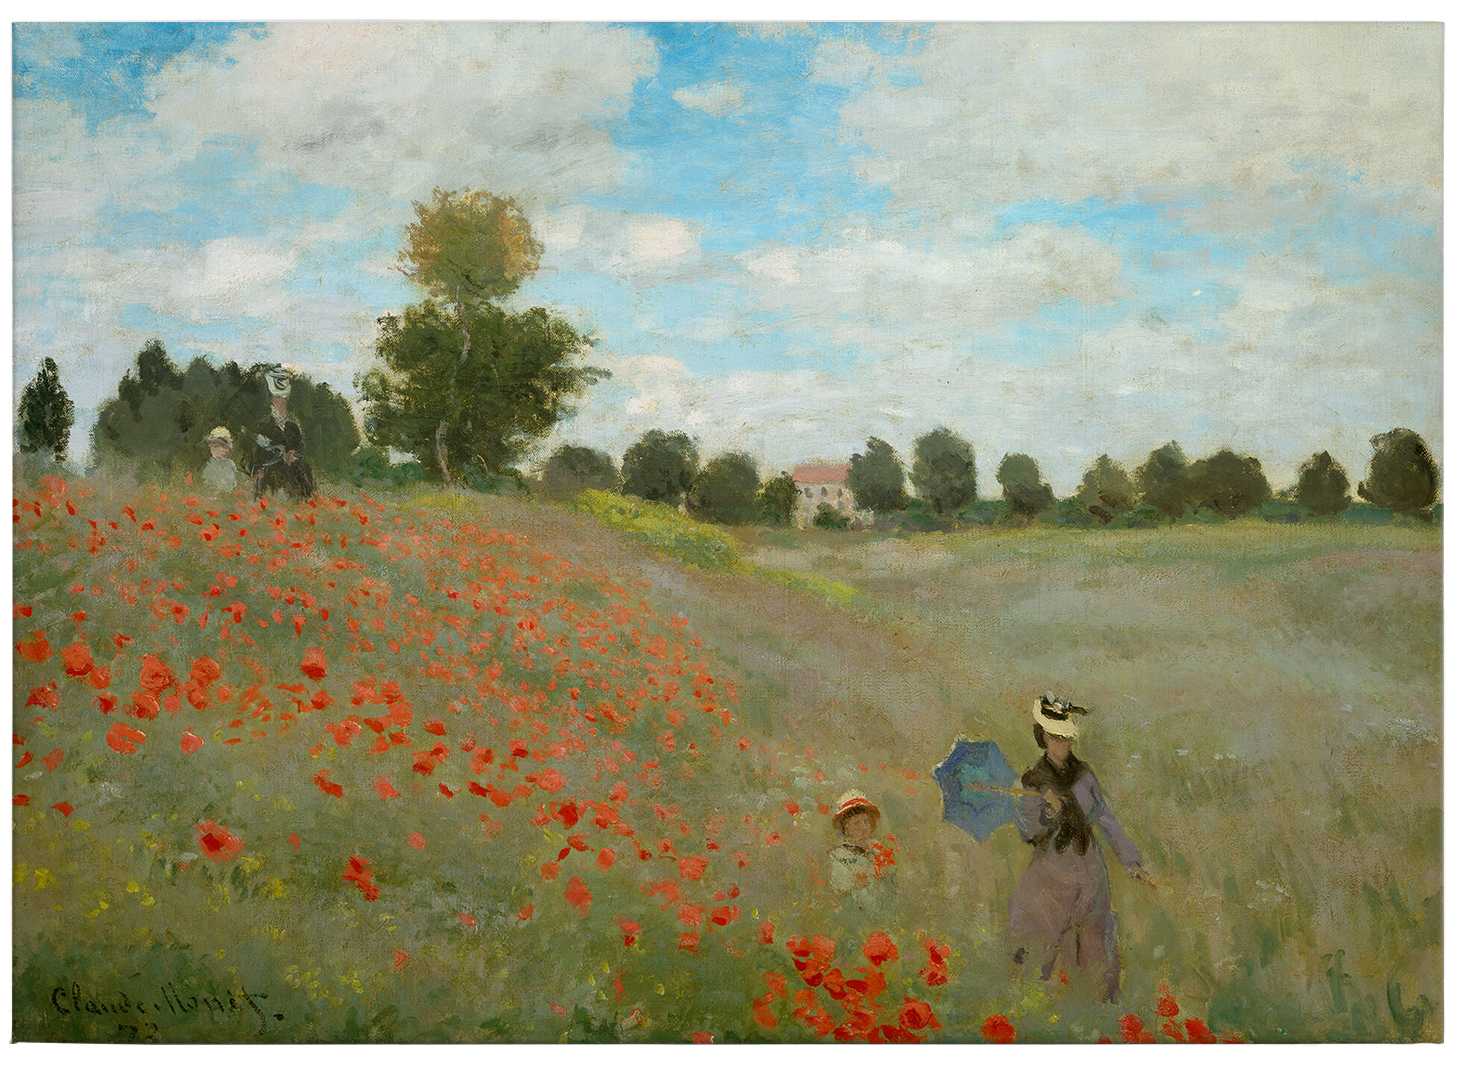             Lienzo Monet "Campo de amapolas cerca de Argenteuil" - 0,70 m x 0,50 m
        